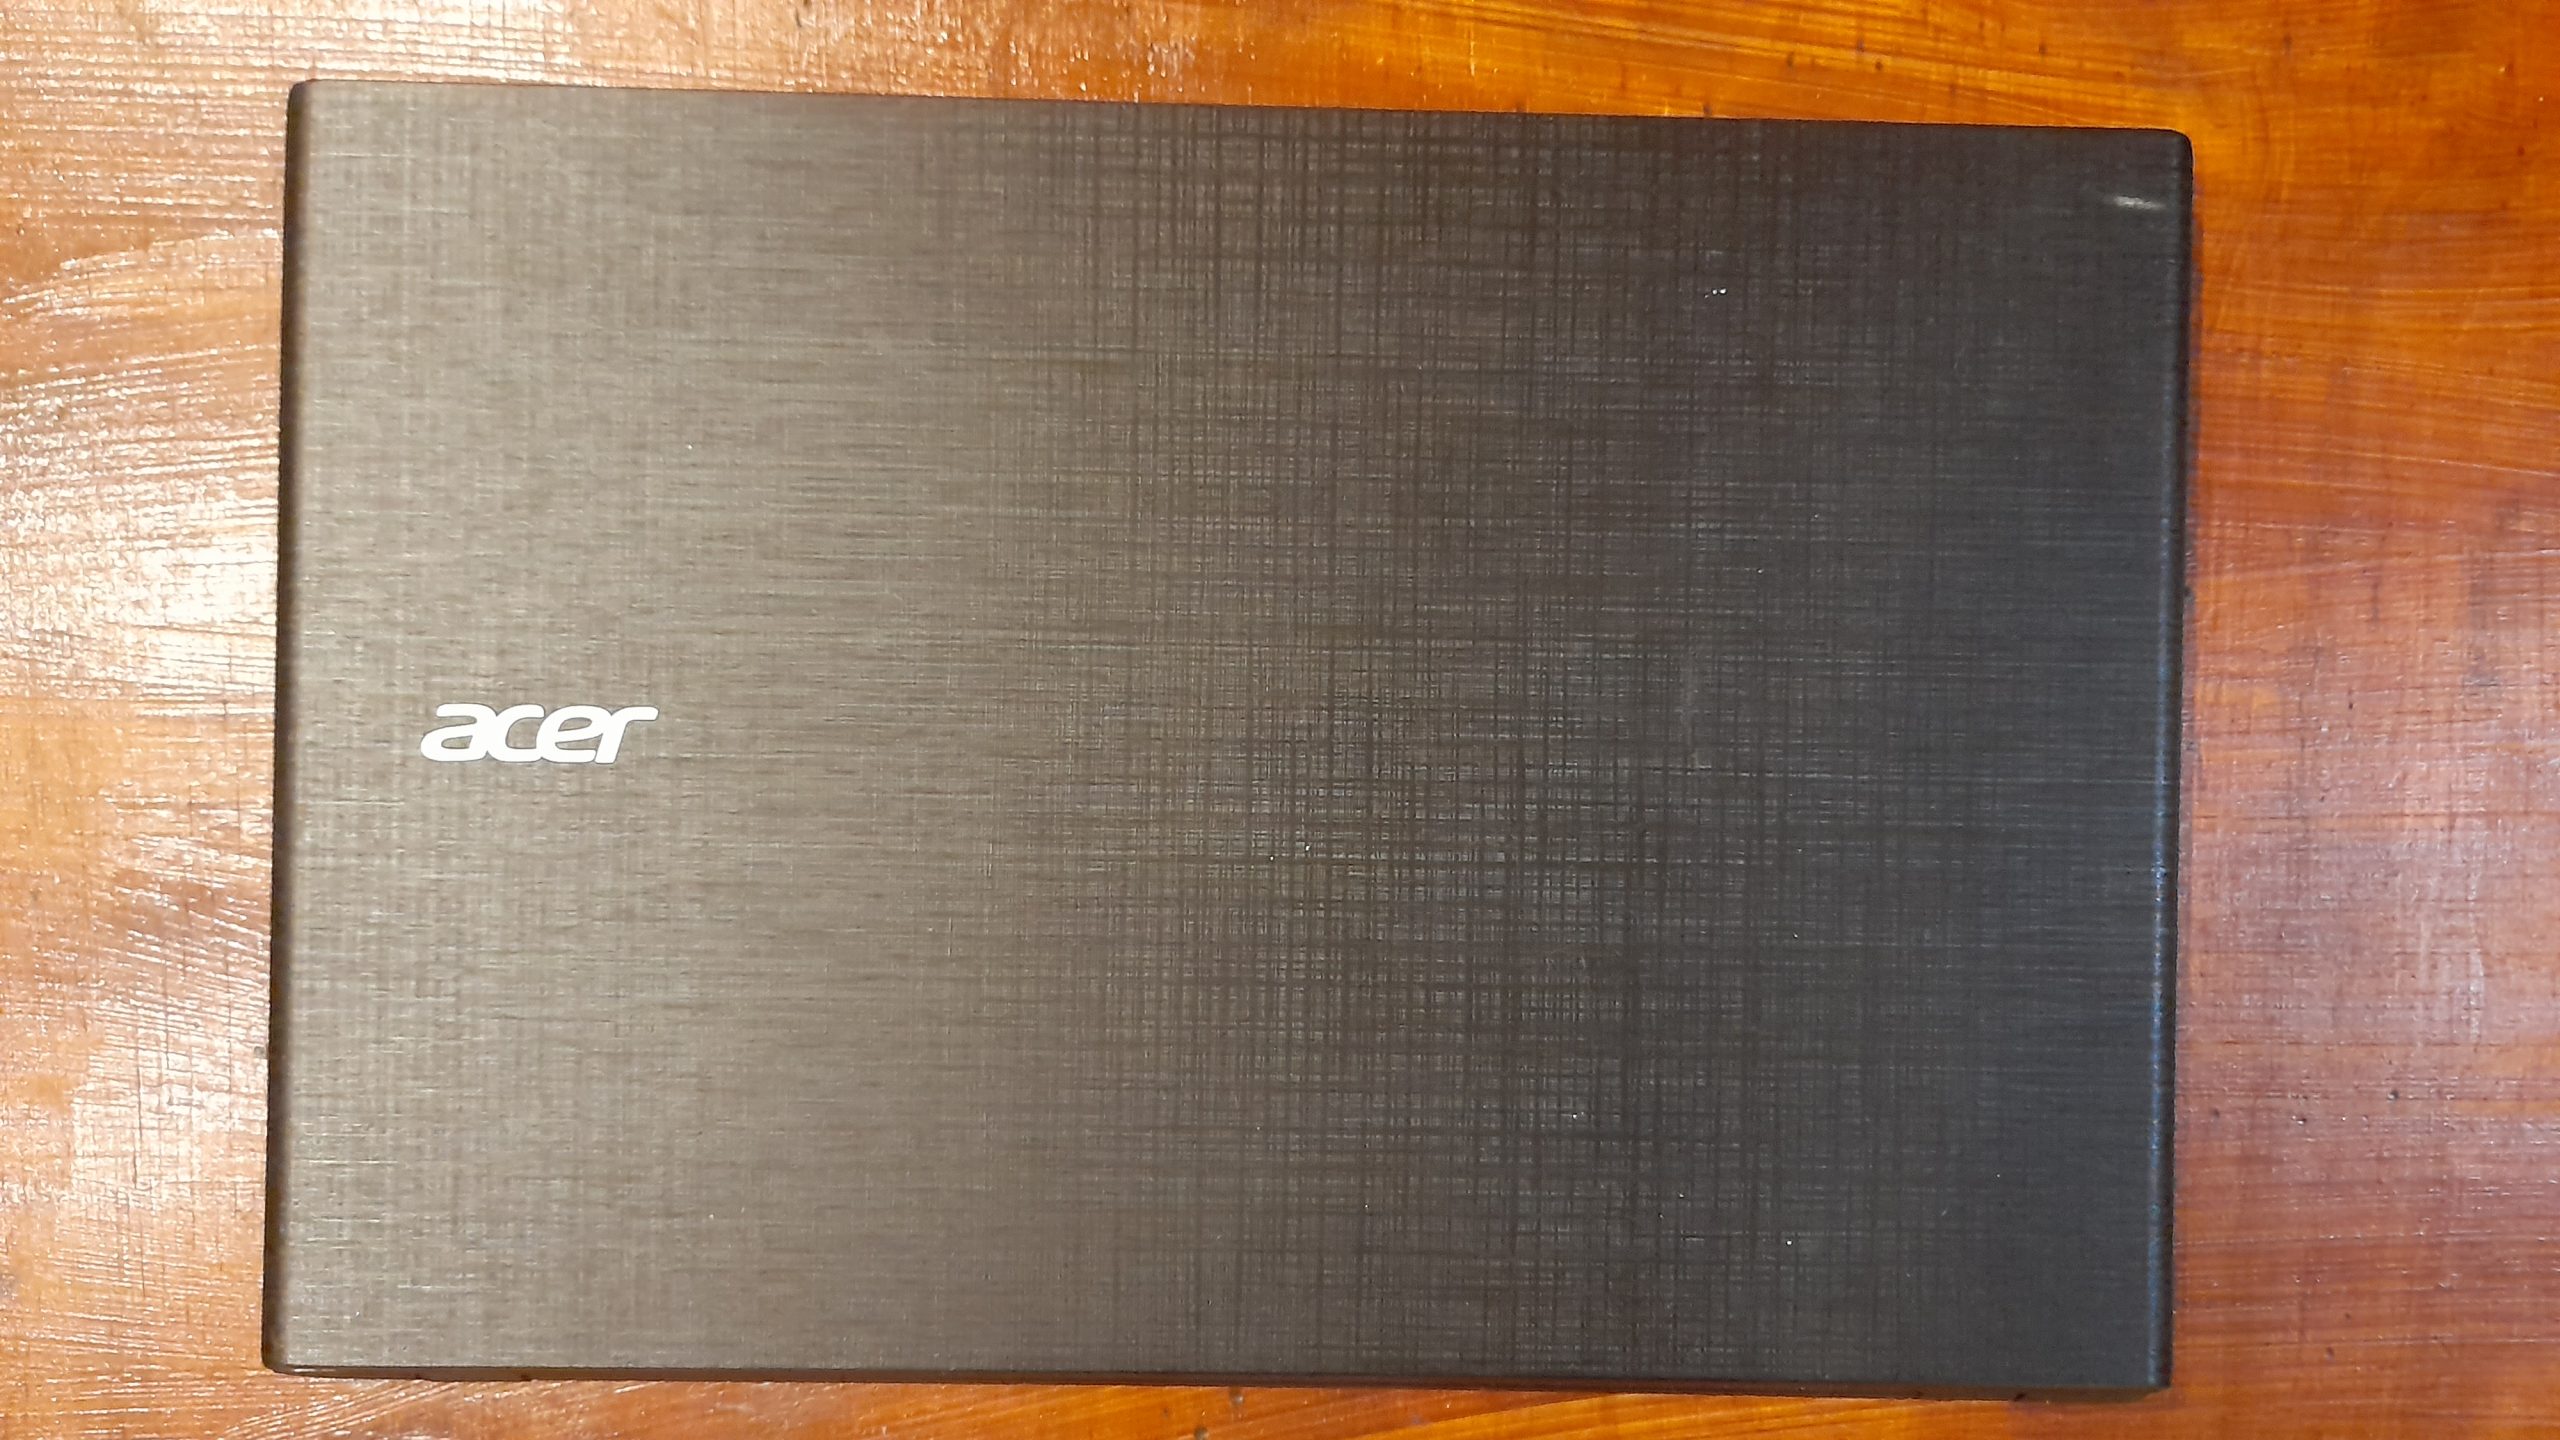 Acer i3 Laptop for sale